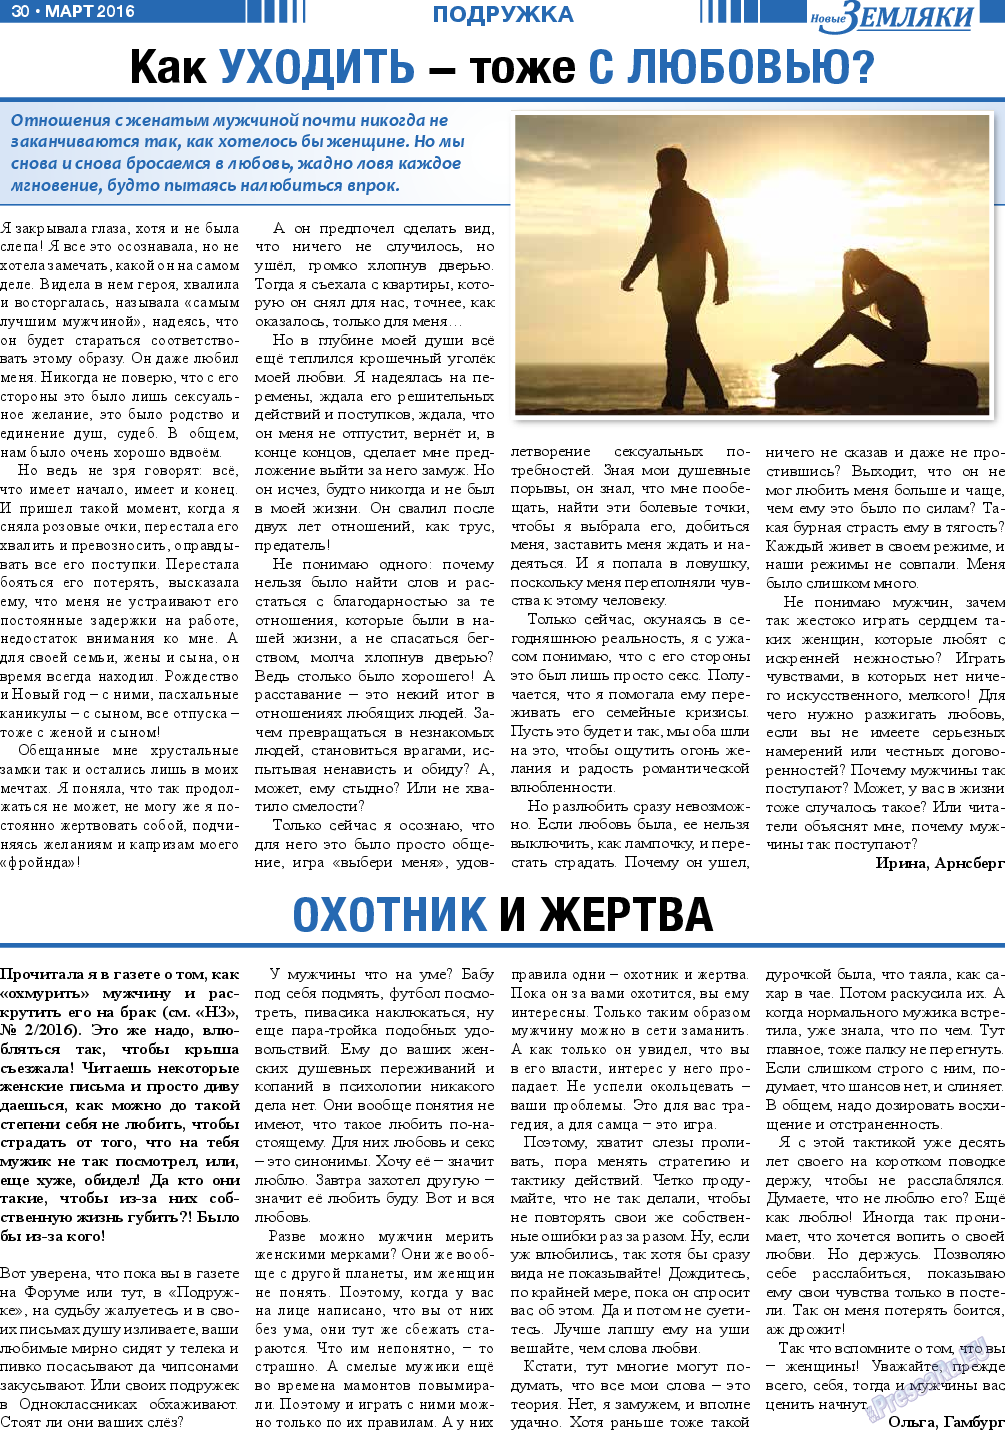 Новые Земляки (газета). 2016 год, номер 3, стр. 30